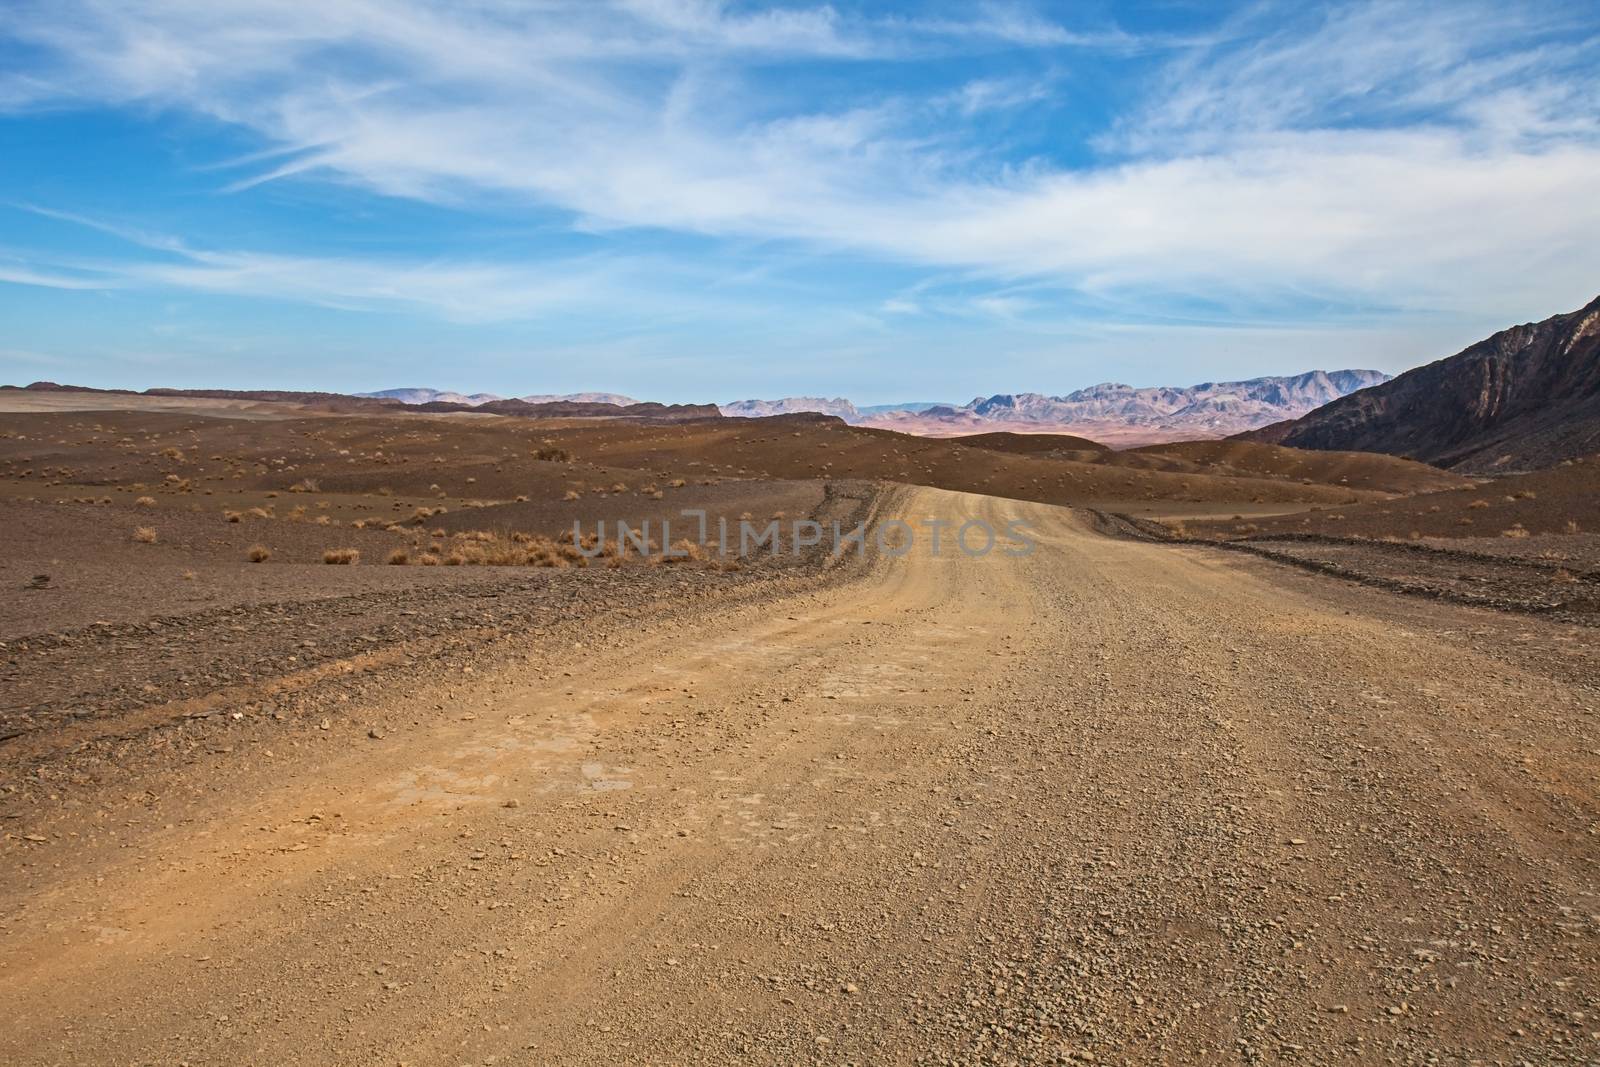 Namibian desert landscape 2 by kobus_peche